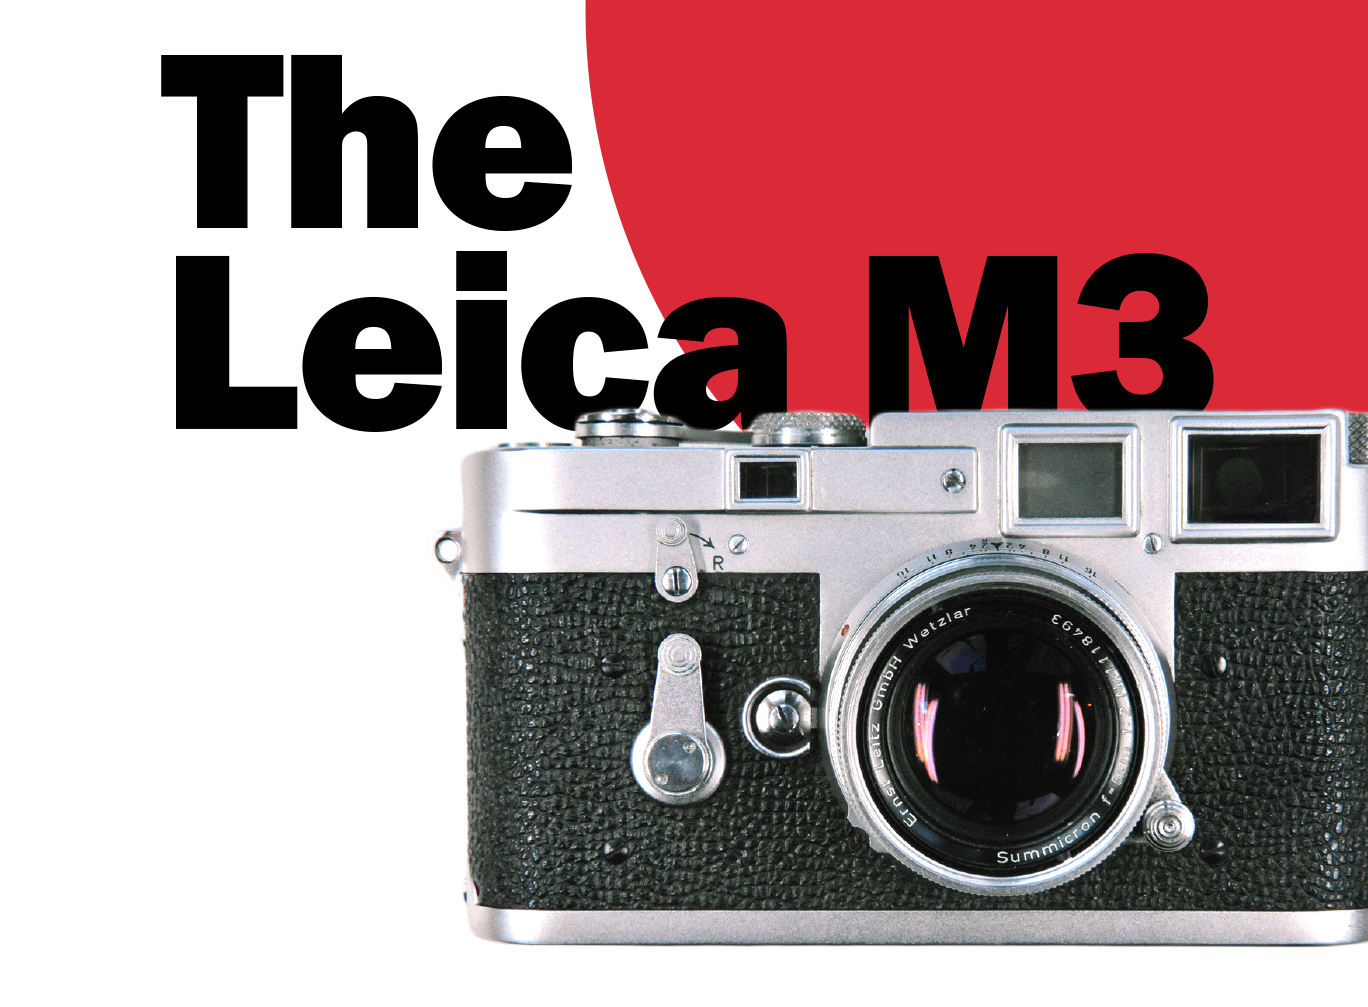 The Leica M3